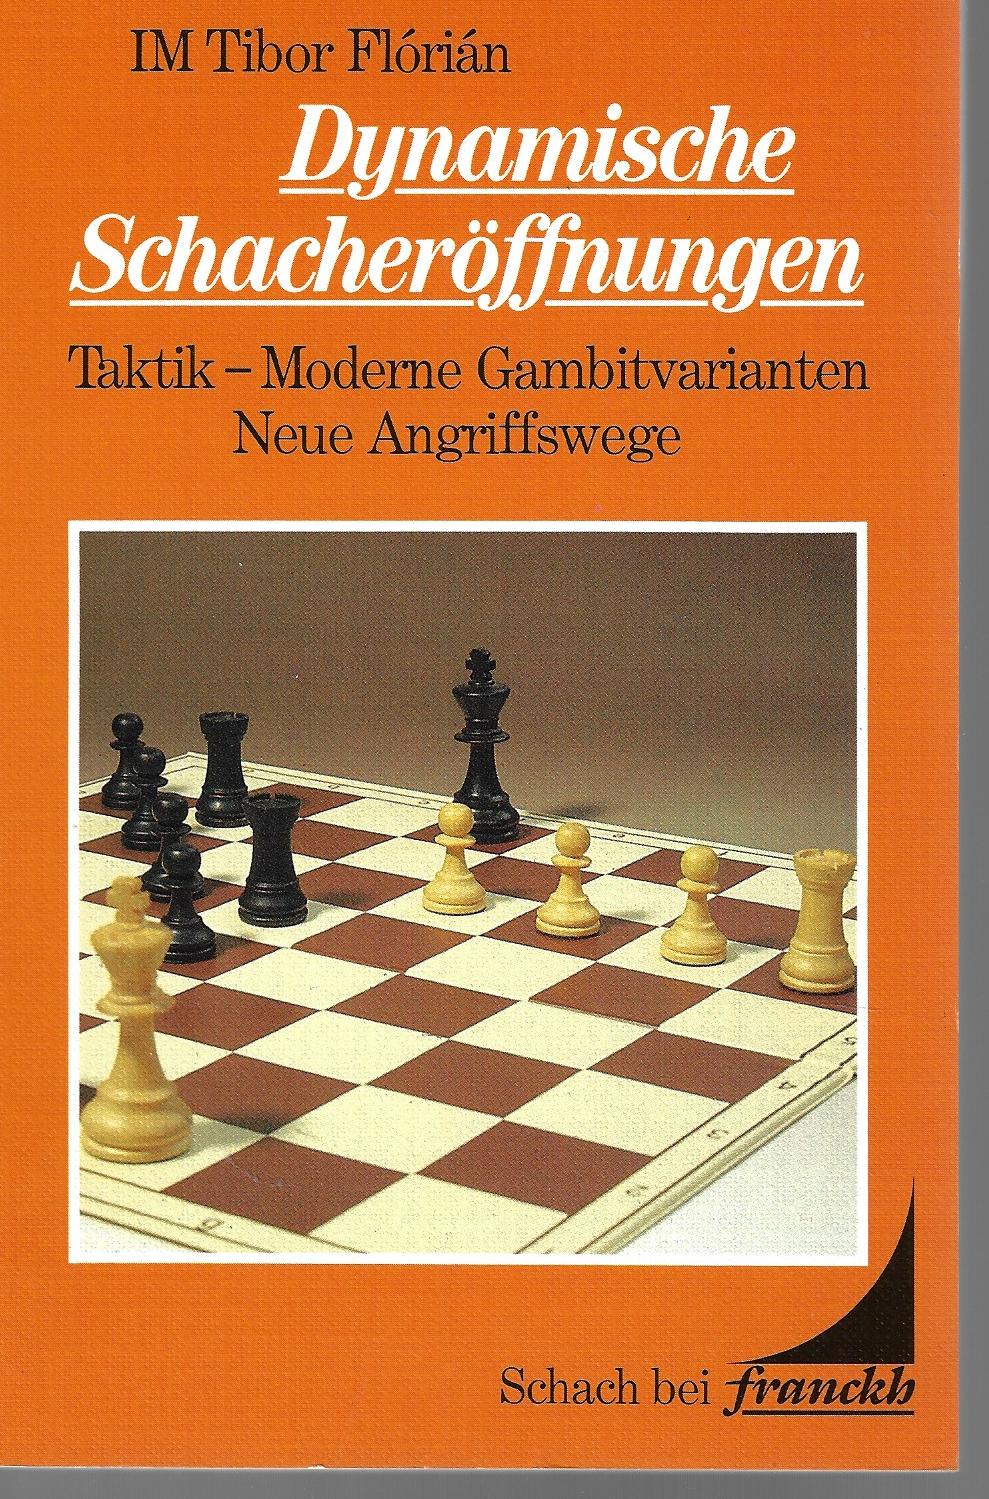 Flórián, Tibor IM - Dynamische Schacheröffnungen -Taktik - Moderne Gambitvarianten Neue Angriffwege